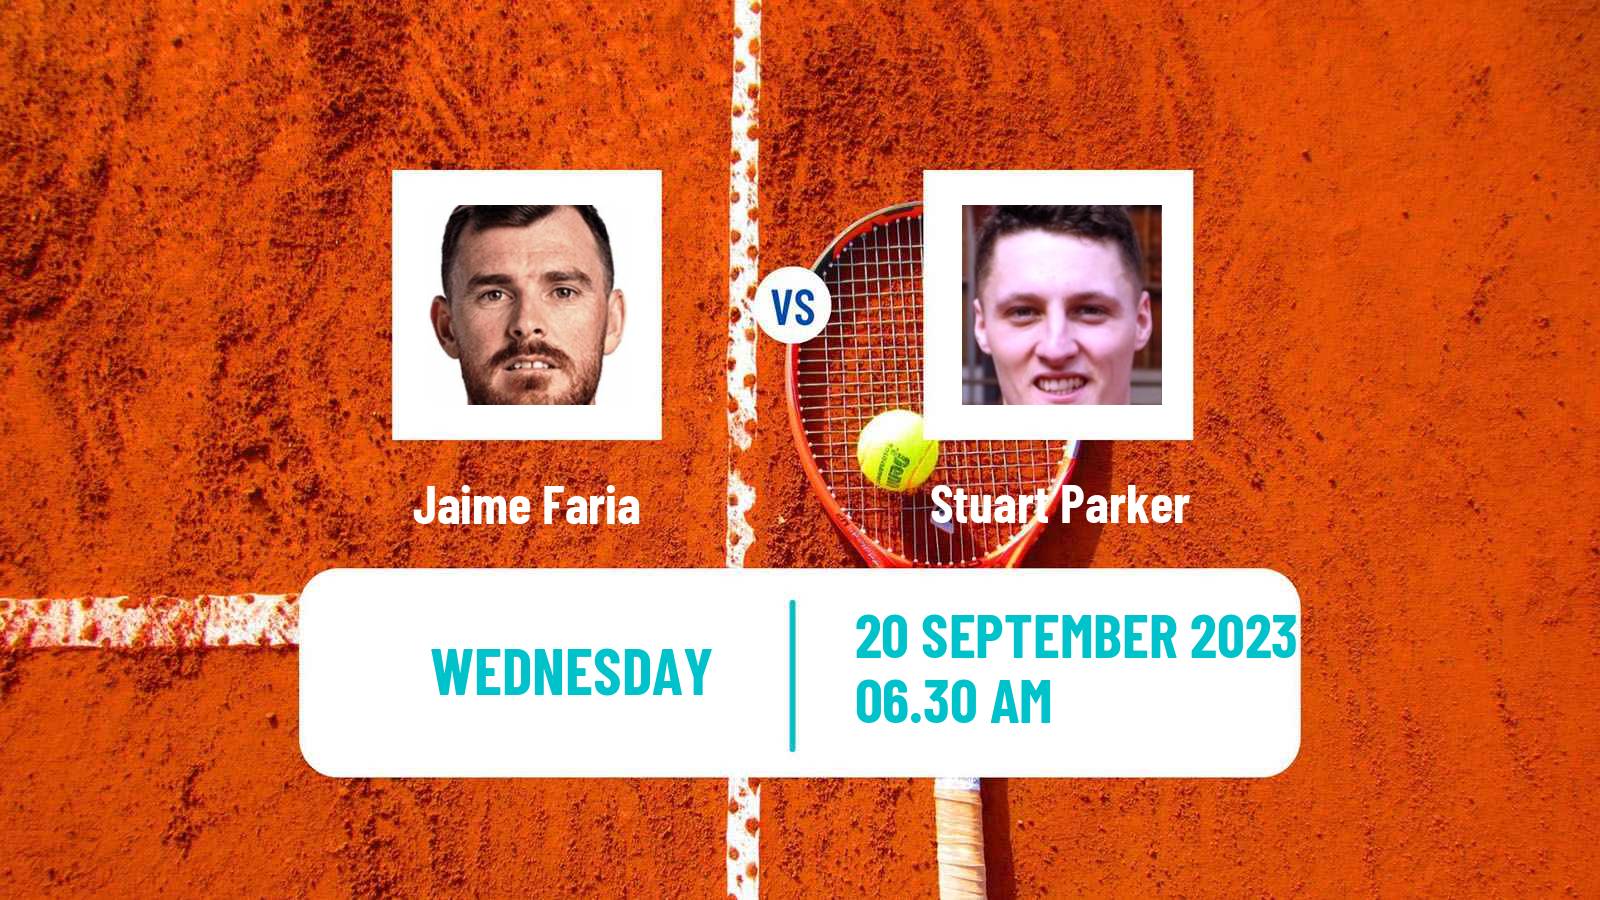 Tennis ITF M25 Setubal Men Jaime Faria - Stuart Parker